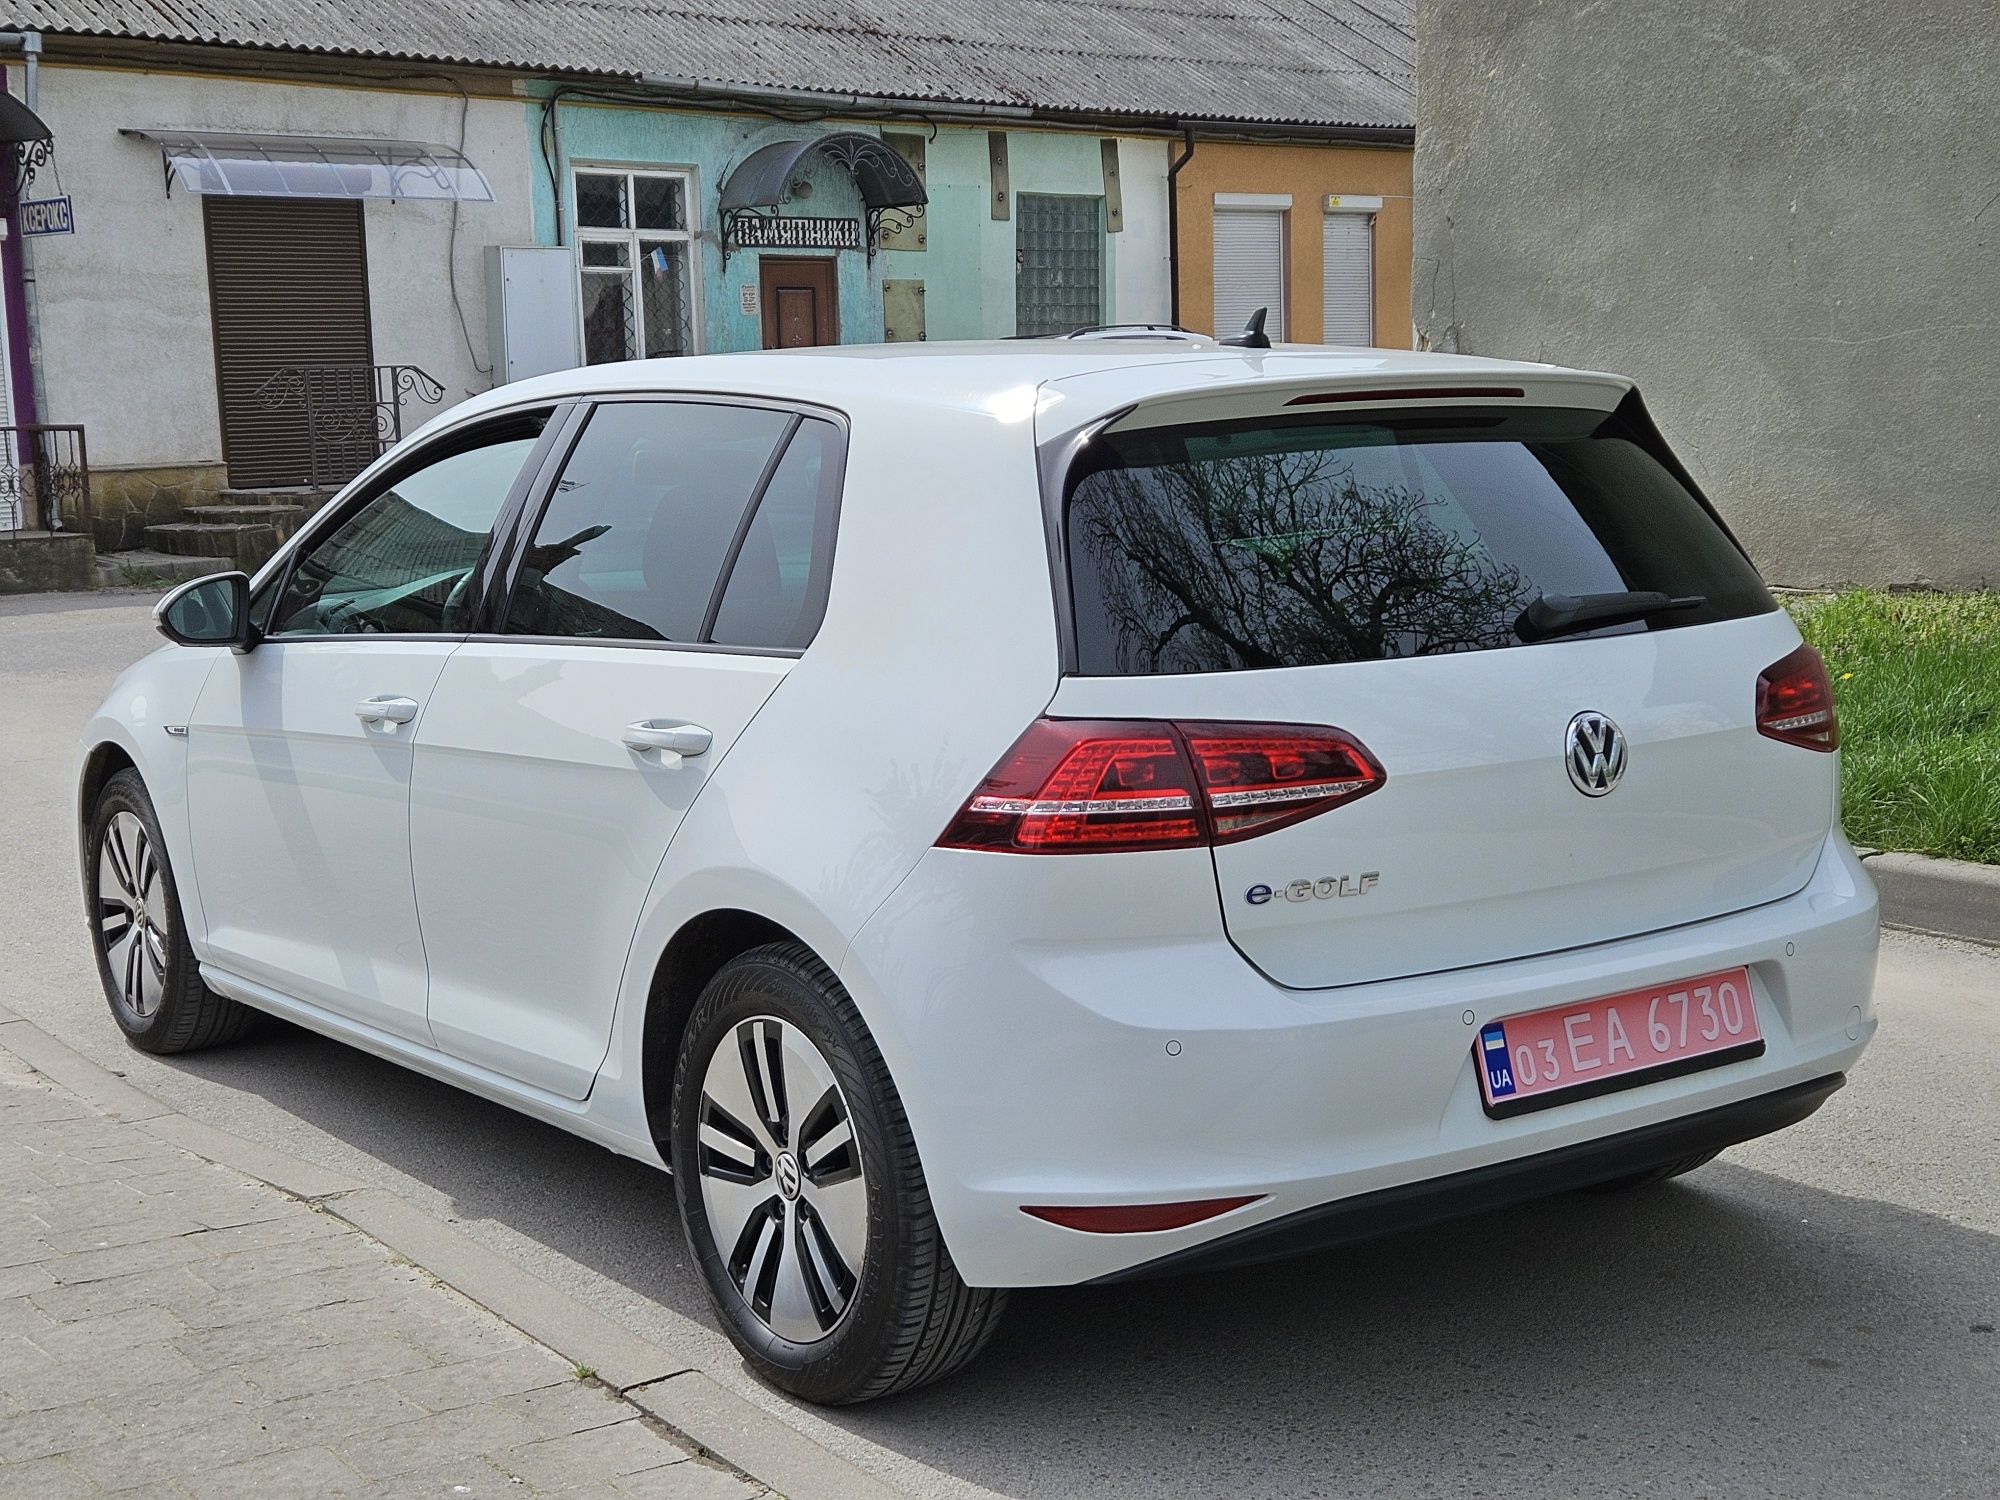 Volkswagen e-golf 2015р. 9500$ Свіжо пригнаний